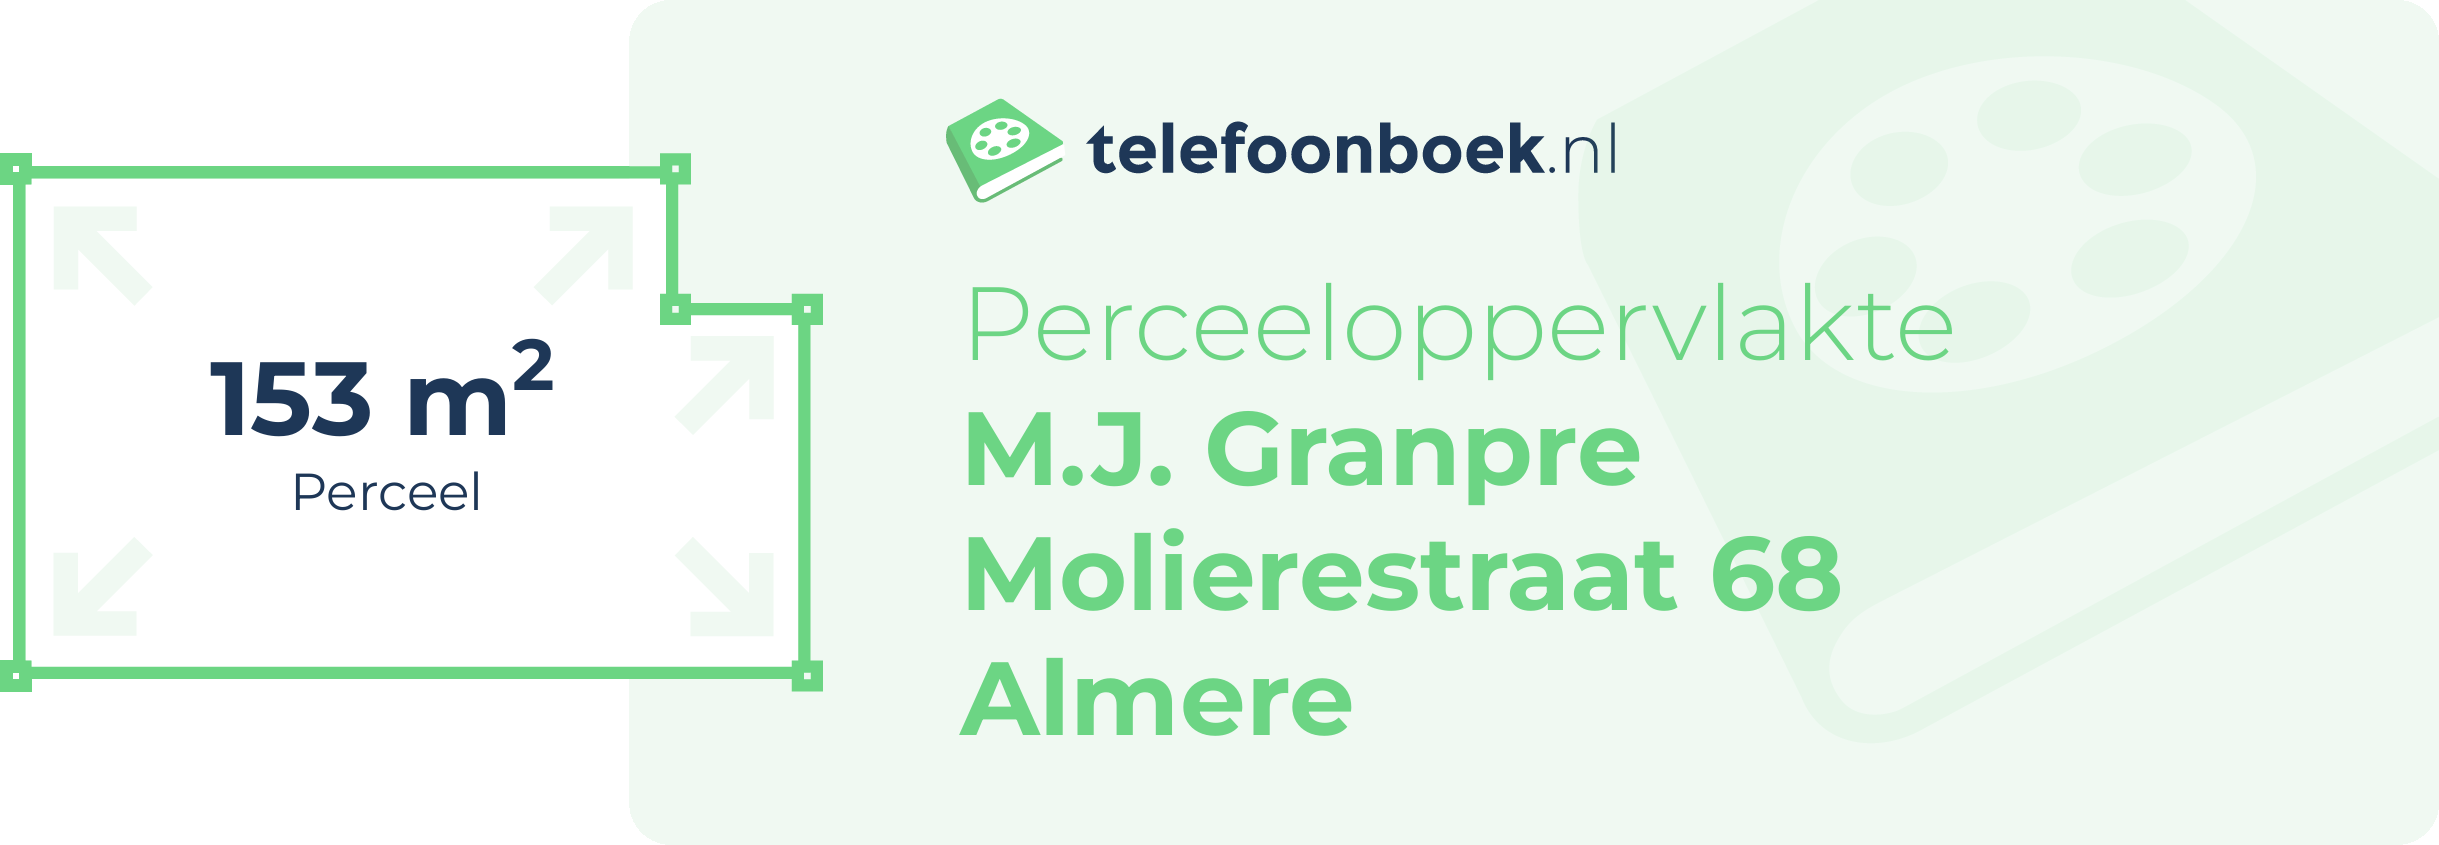 Perceeloppervlakte M.J. Granpre Molierestraat 68 Almere